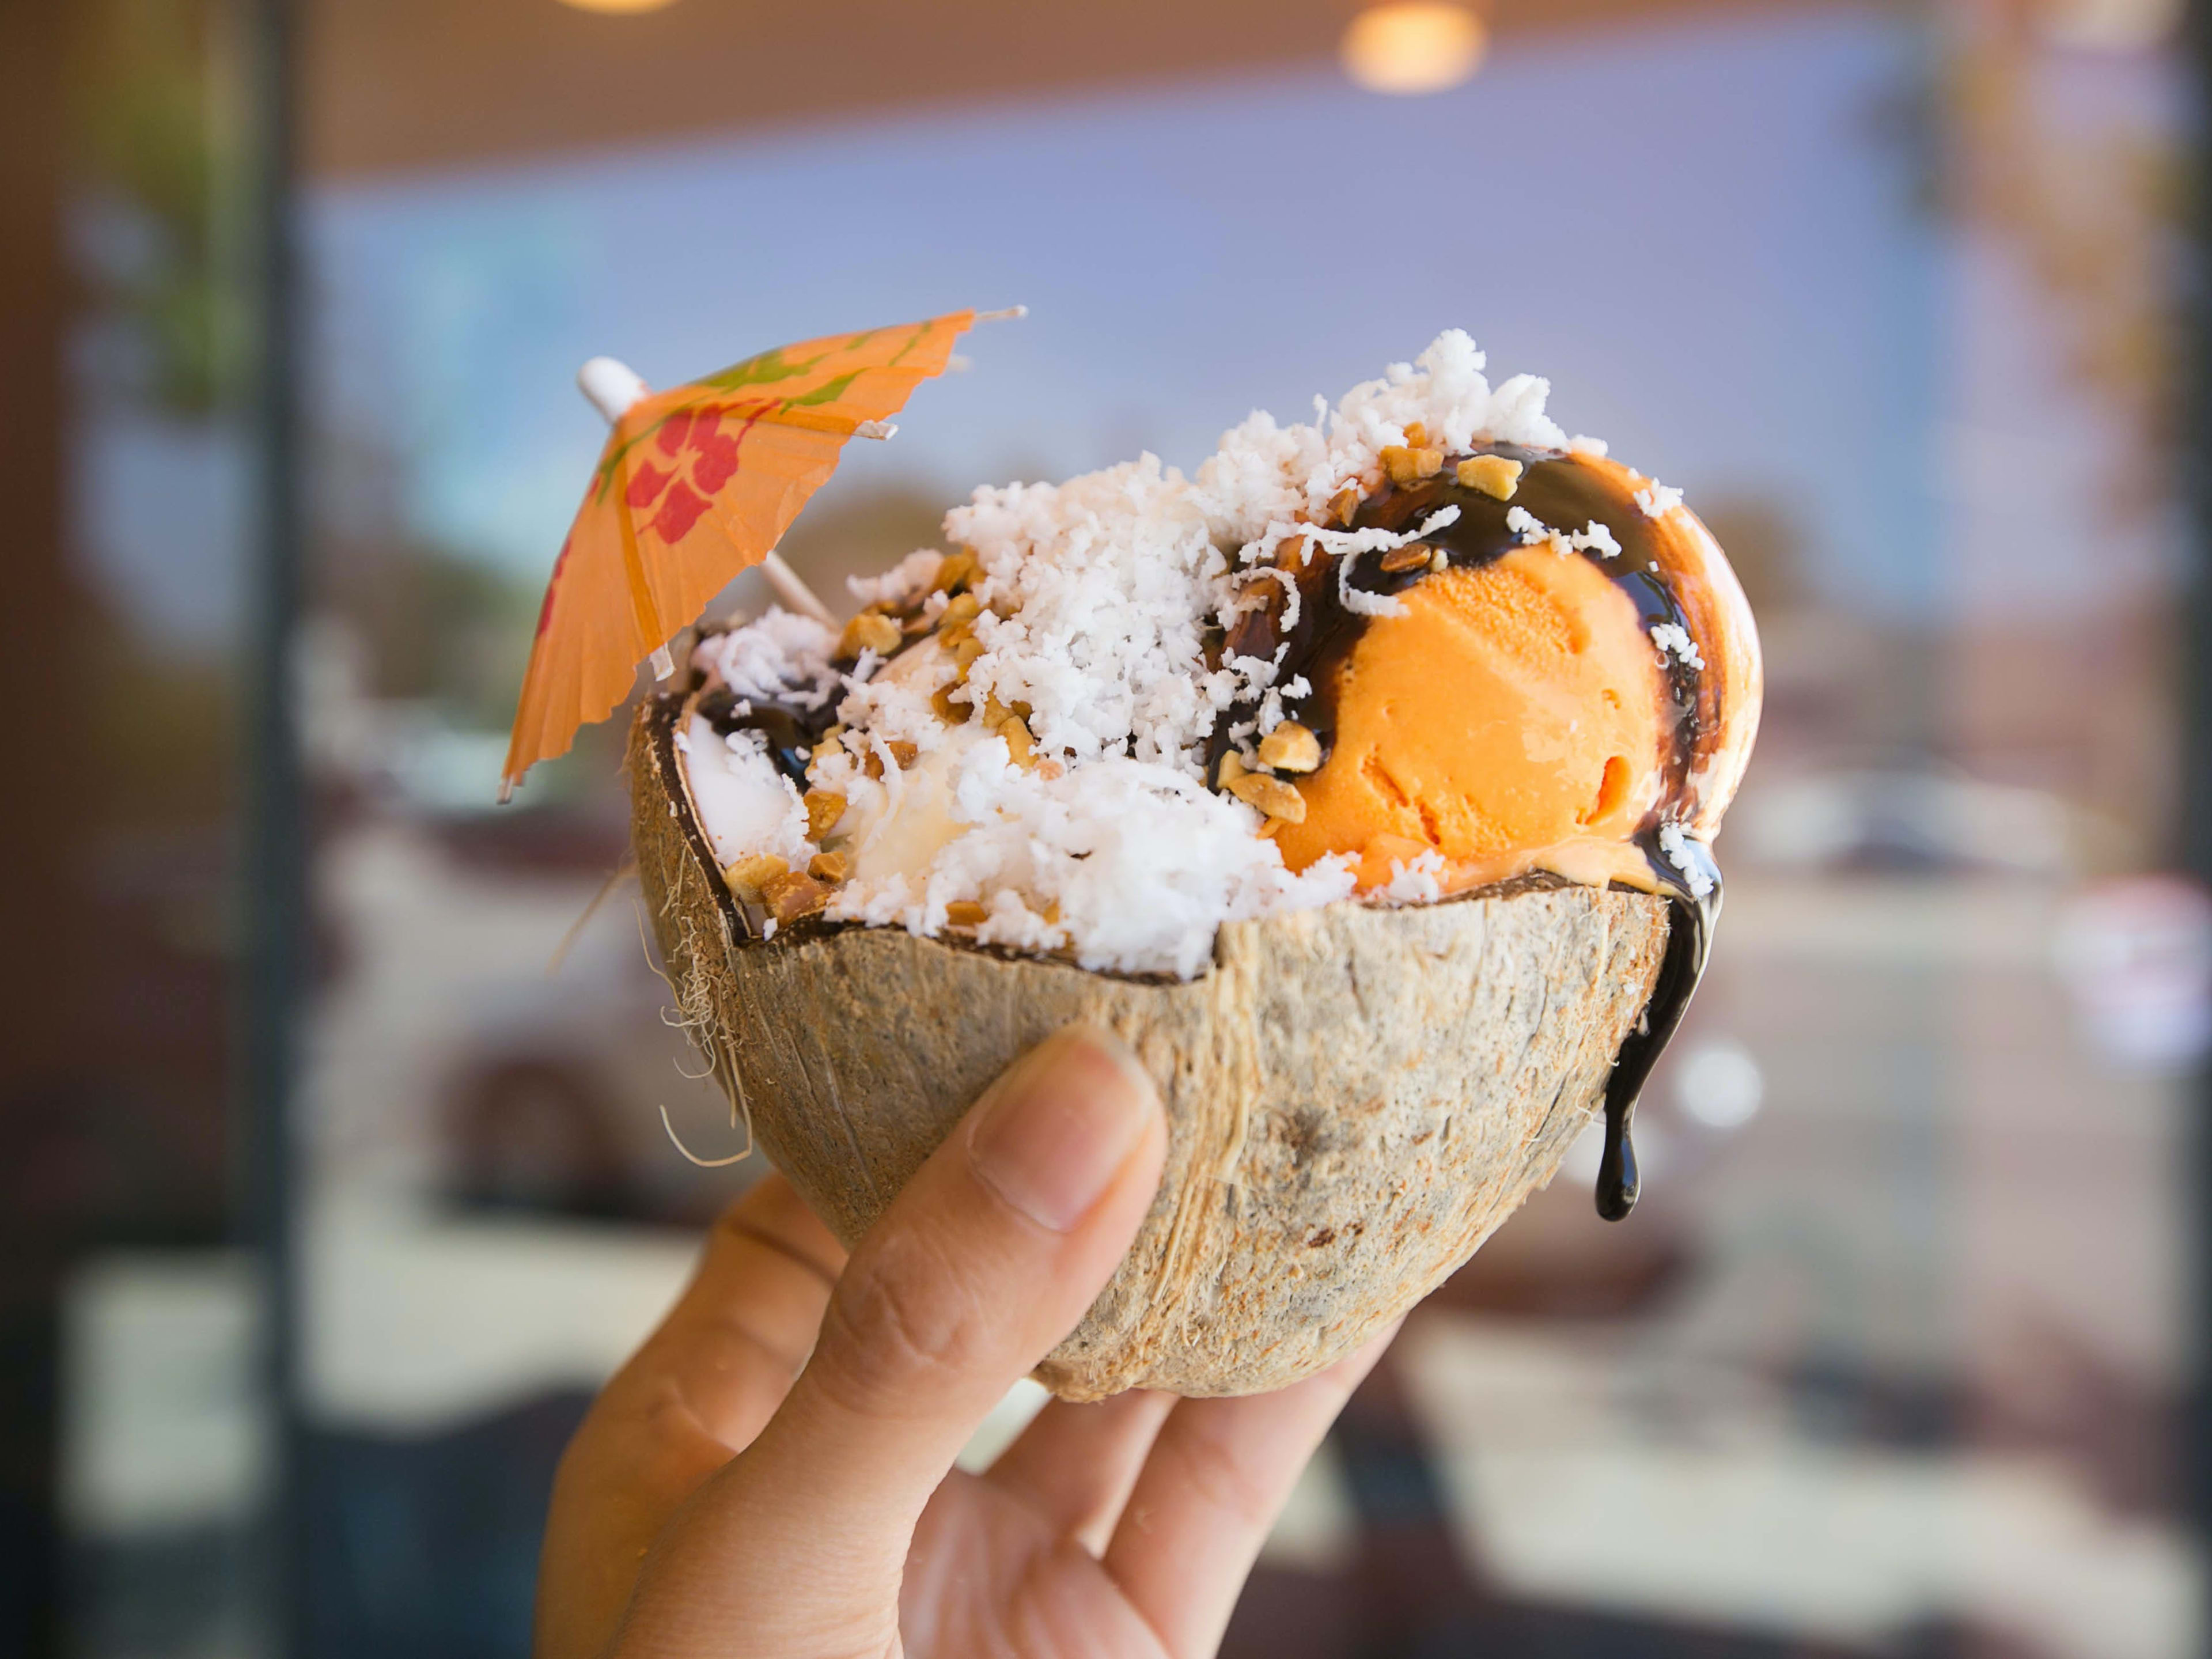 A coconut sundae from Pops Artisanal Creamery